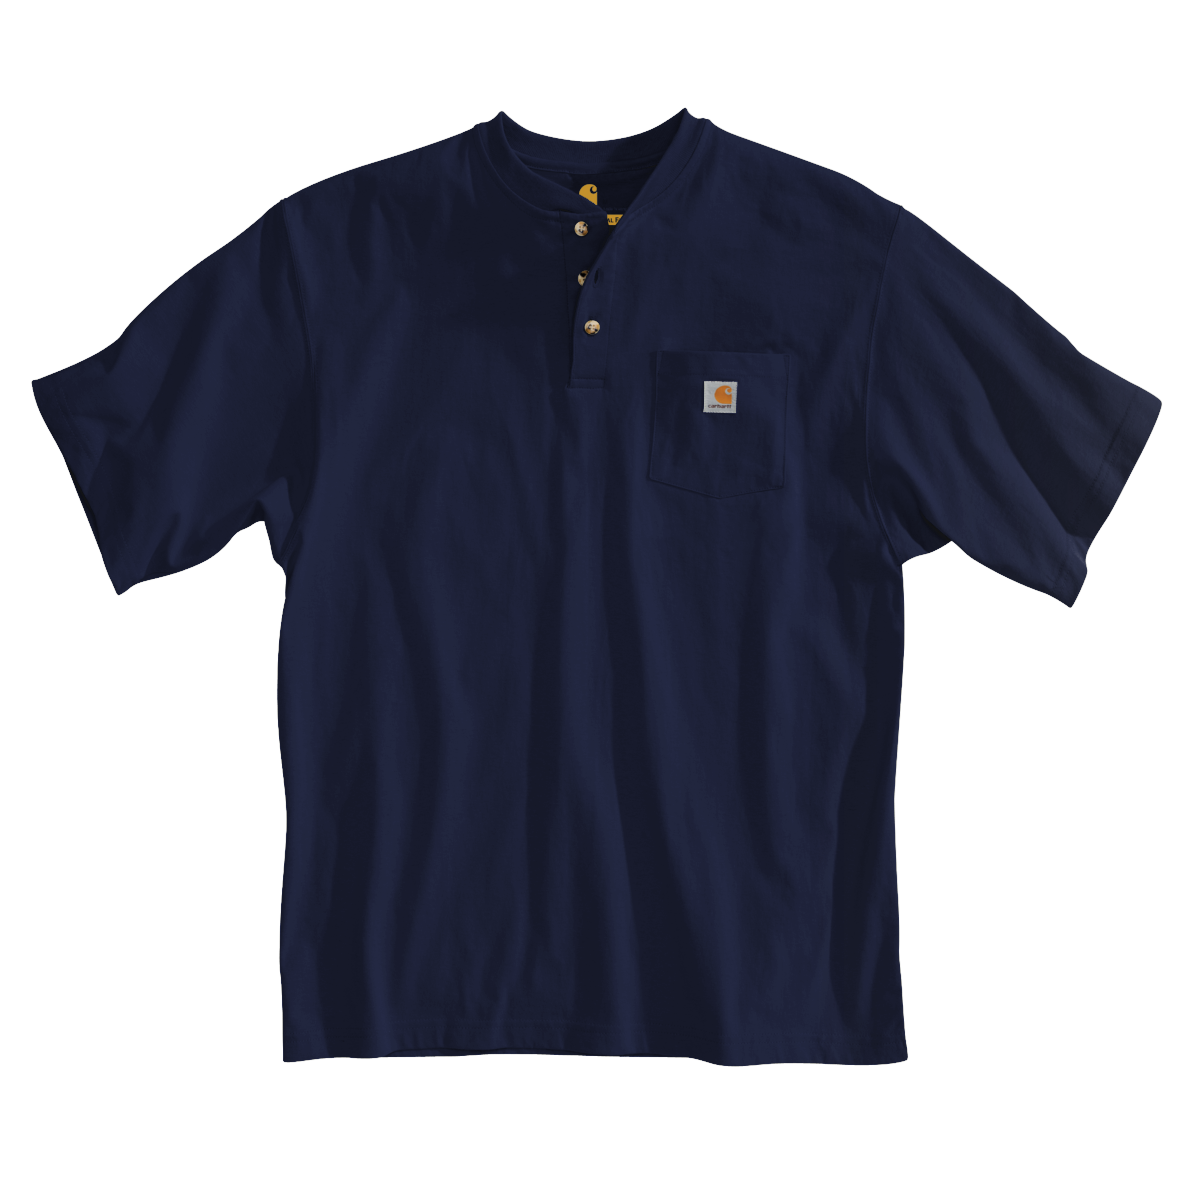 K84 - Carhartt Men's Loose Fit Heavyweight Short-Sleeve Pocket Henley T-Shirt